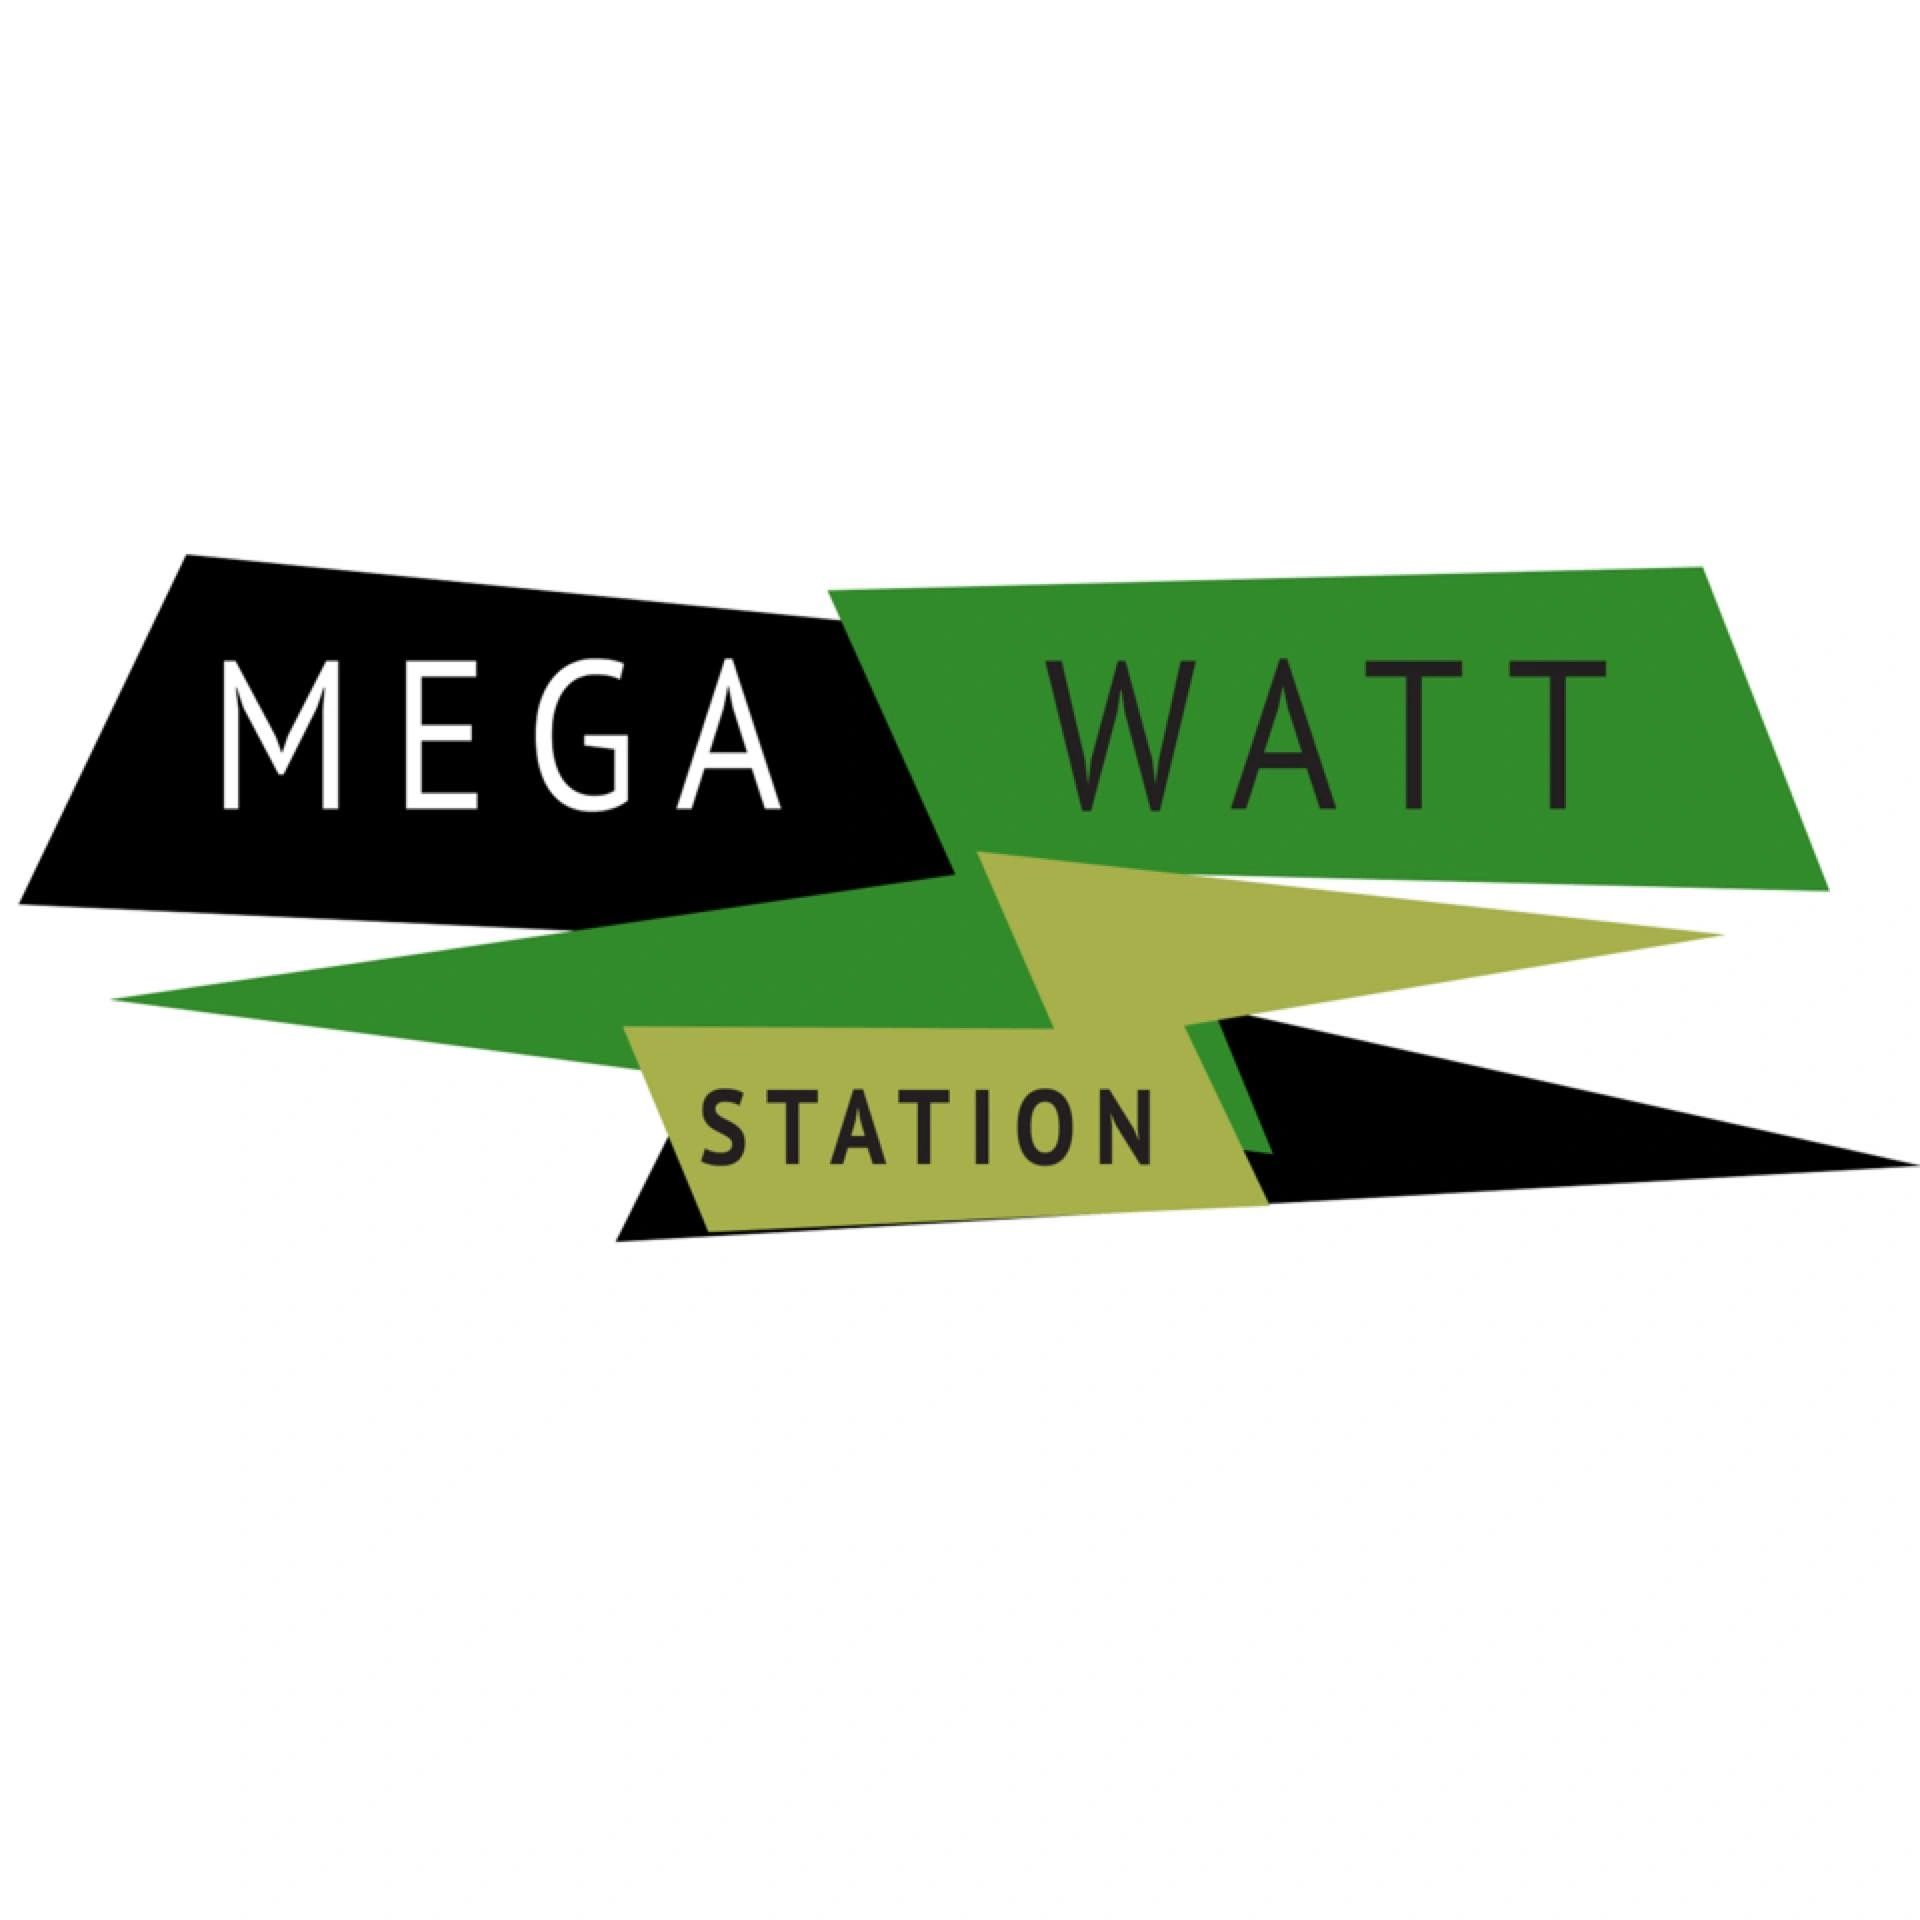 MegaWatt Station